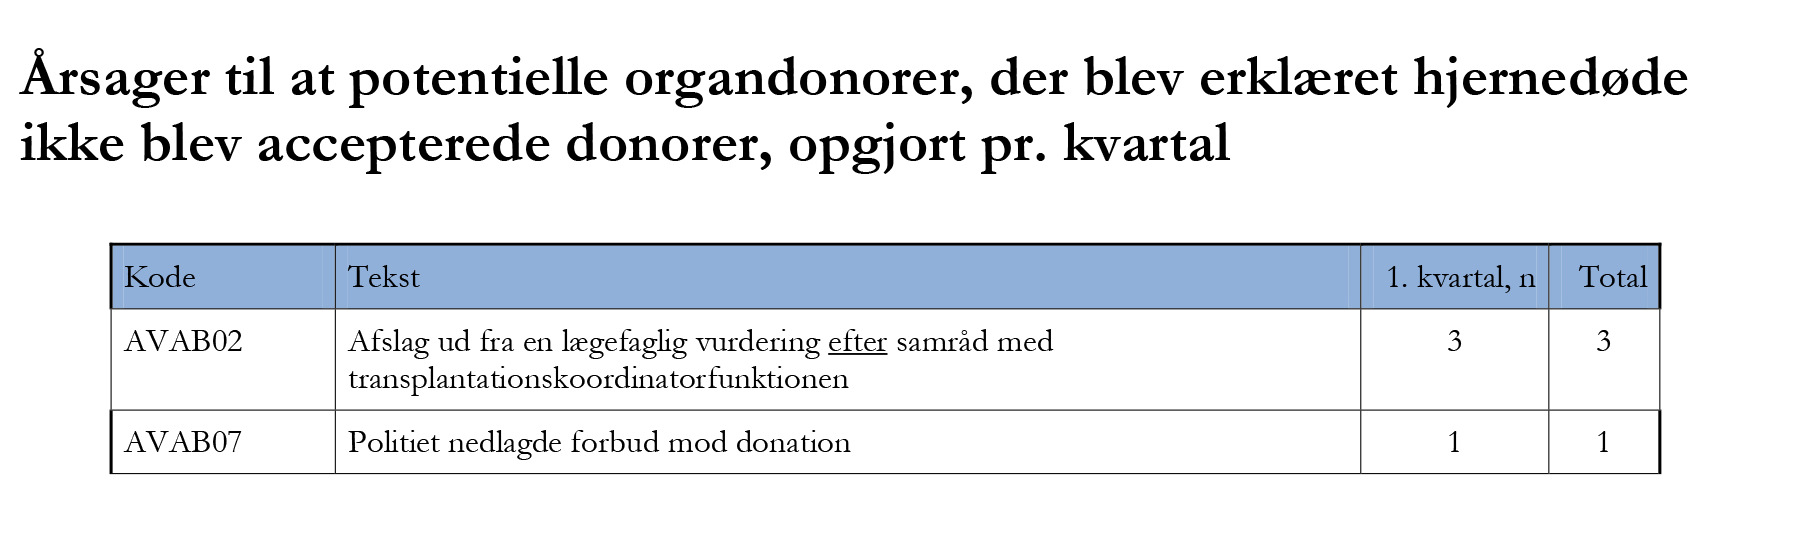 spørgsmål 1-10 Årsager til at potentielle donorer ikke bliver erklæret hjernedøde, svarende til registreringsskemaets spørgsmål 8.1-8.15.